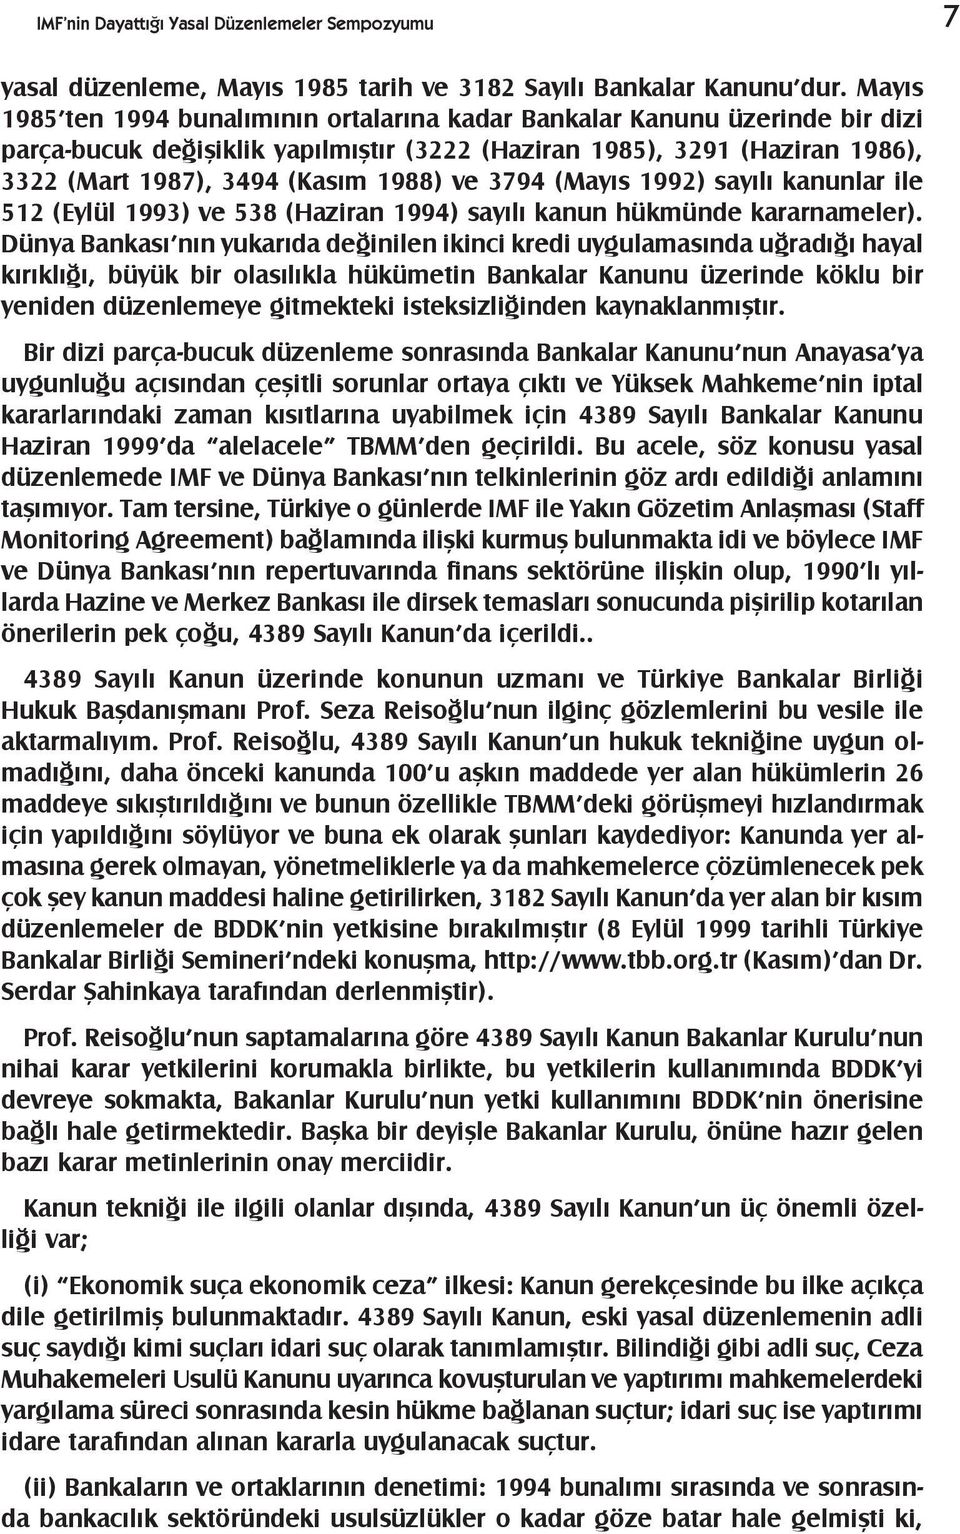 3794 (Mayýs 1992) sayýlý kanunlar ile 512 (Eylül 1993) ve 538 (Haziran 1994) sayýlý kanun hükmünde kararnameler).